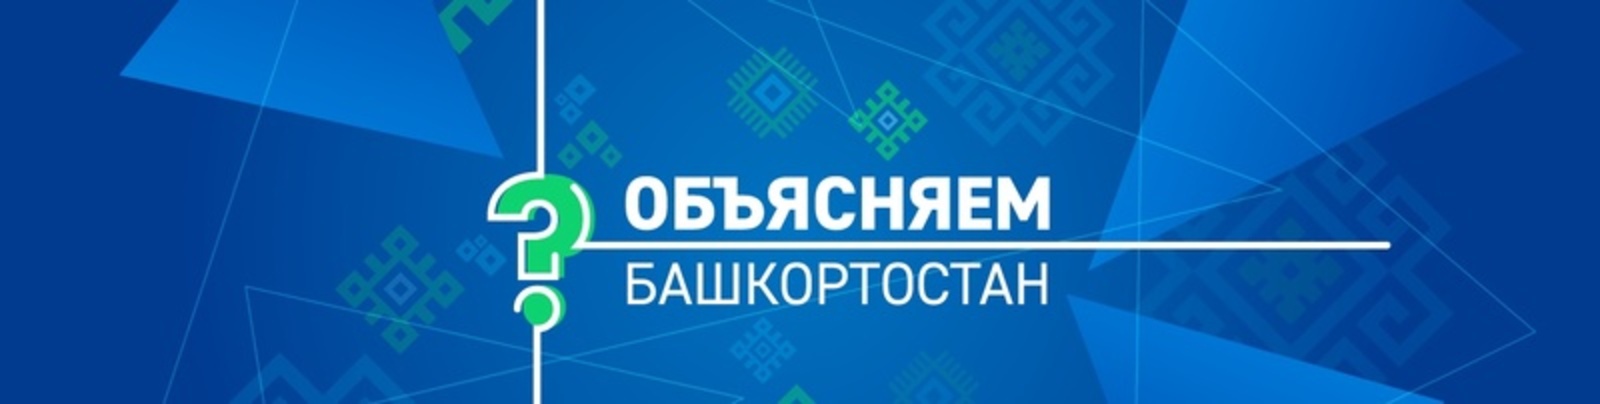 Министр торговли и услуг РБ Алексей Гусев прокомментировал ситуацию с детским питанием